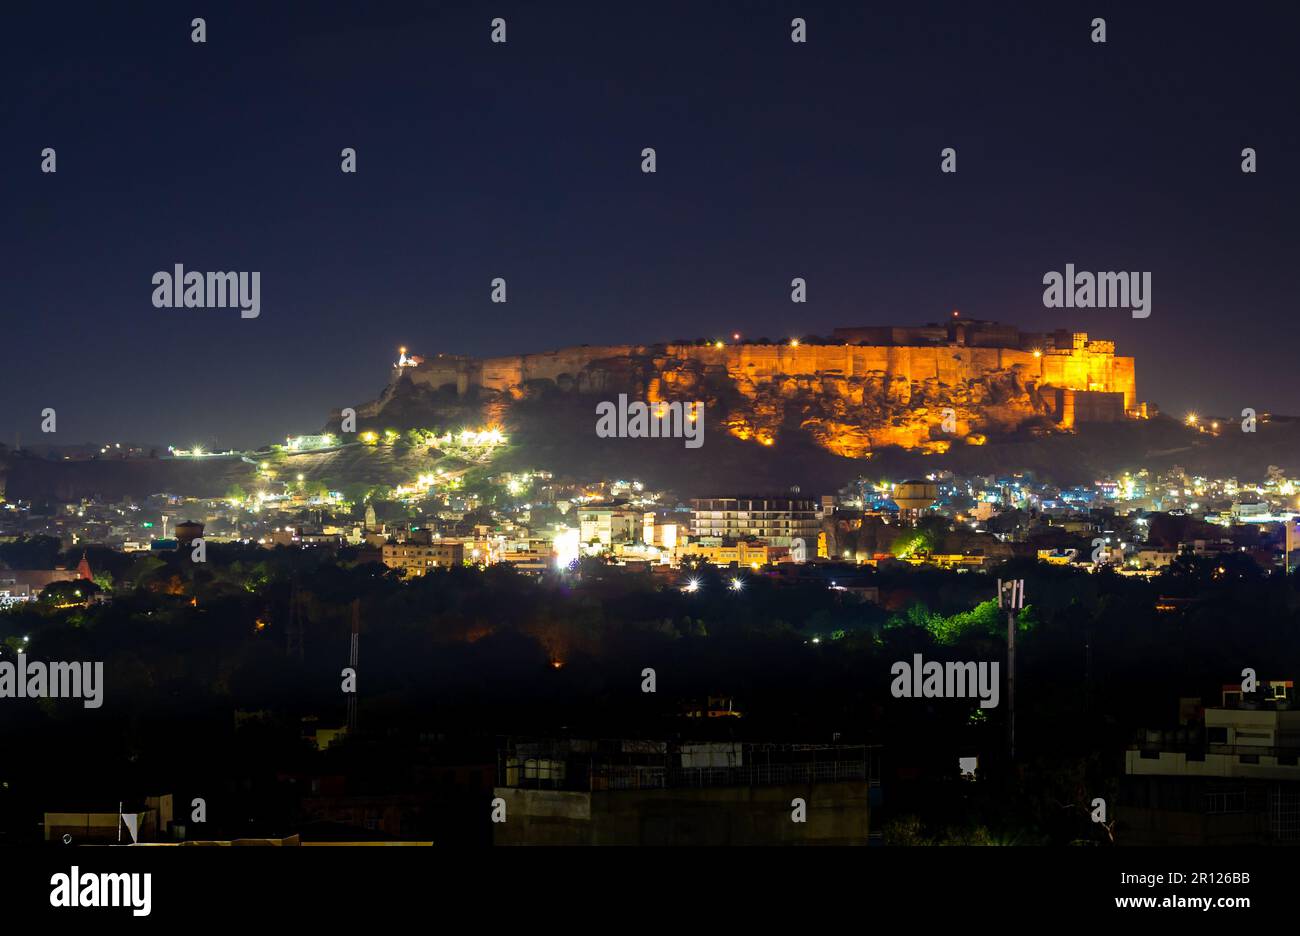 Das Fort mehrangarh mit nächtlichem Blick auf die Landschaft der Stadt und Lichtern bei Nacht wird am 05 2023. Mai im jodhpur rajasthan india aufgenommen. Stockfoto